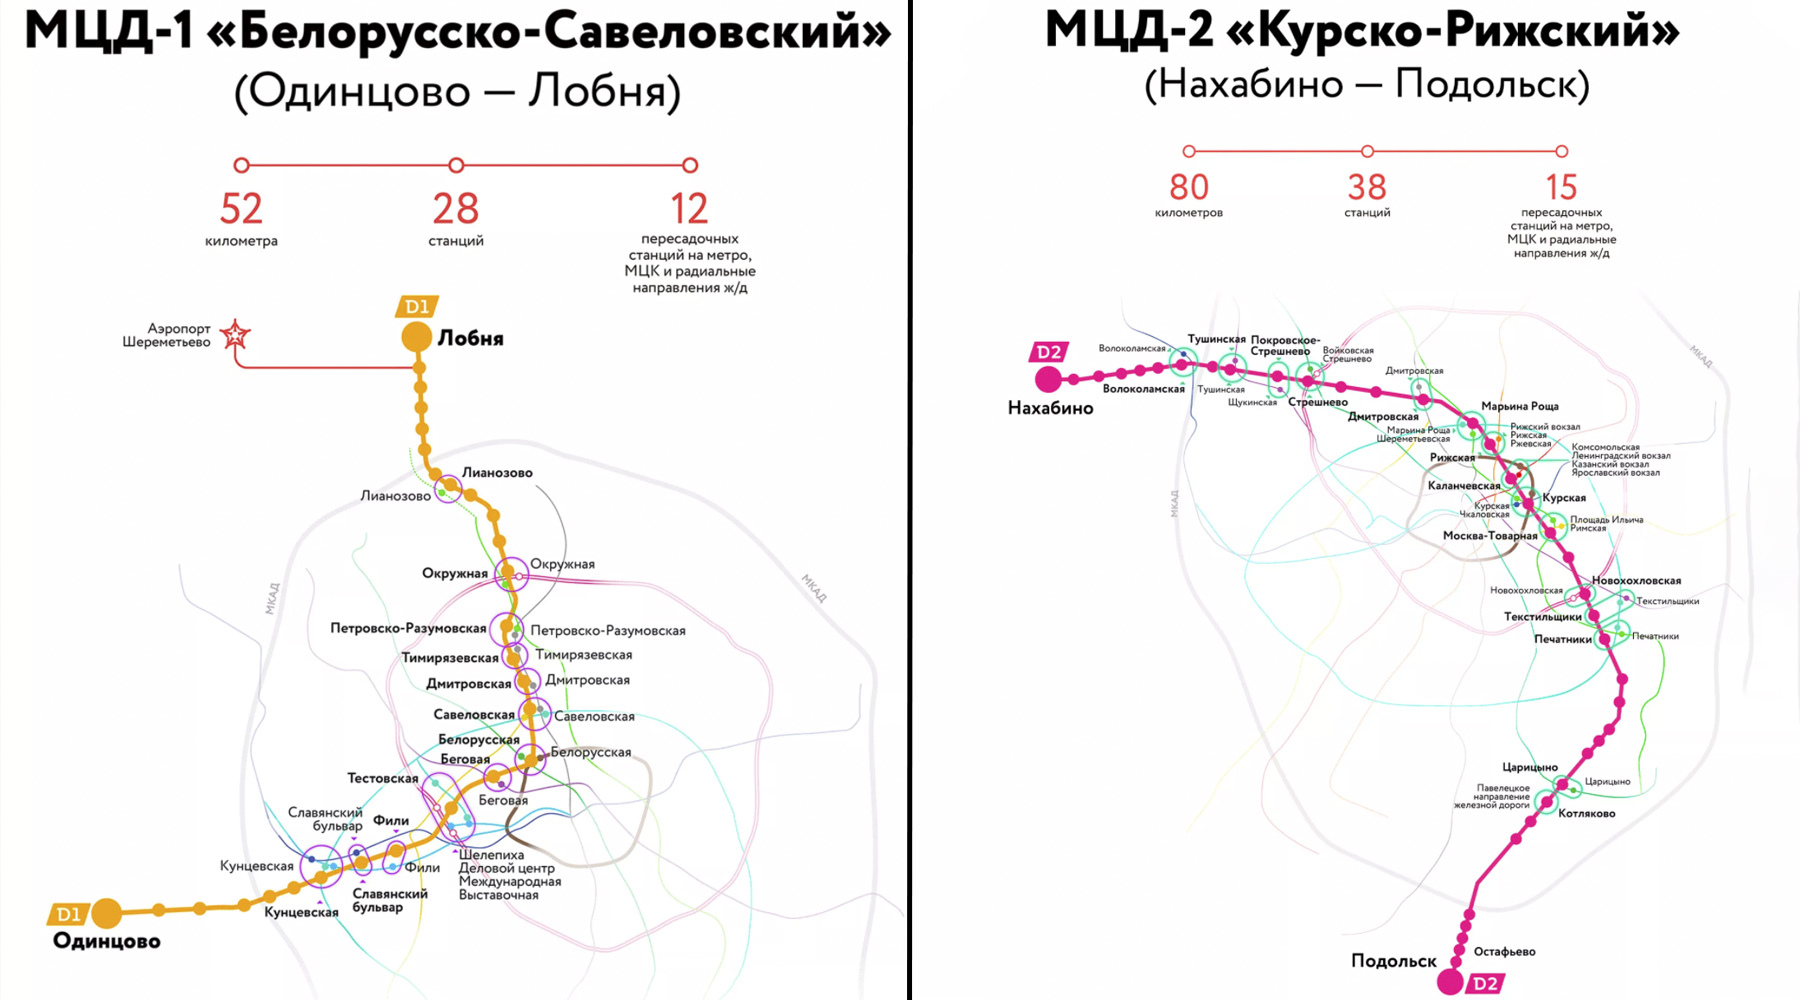 Алтуфьево яхрома автобус. МЦД-2 схема станций. Схема метро Москвы d2. МЦД-1 схема станций. МЦД Подольск схема станций.